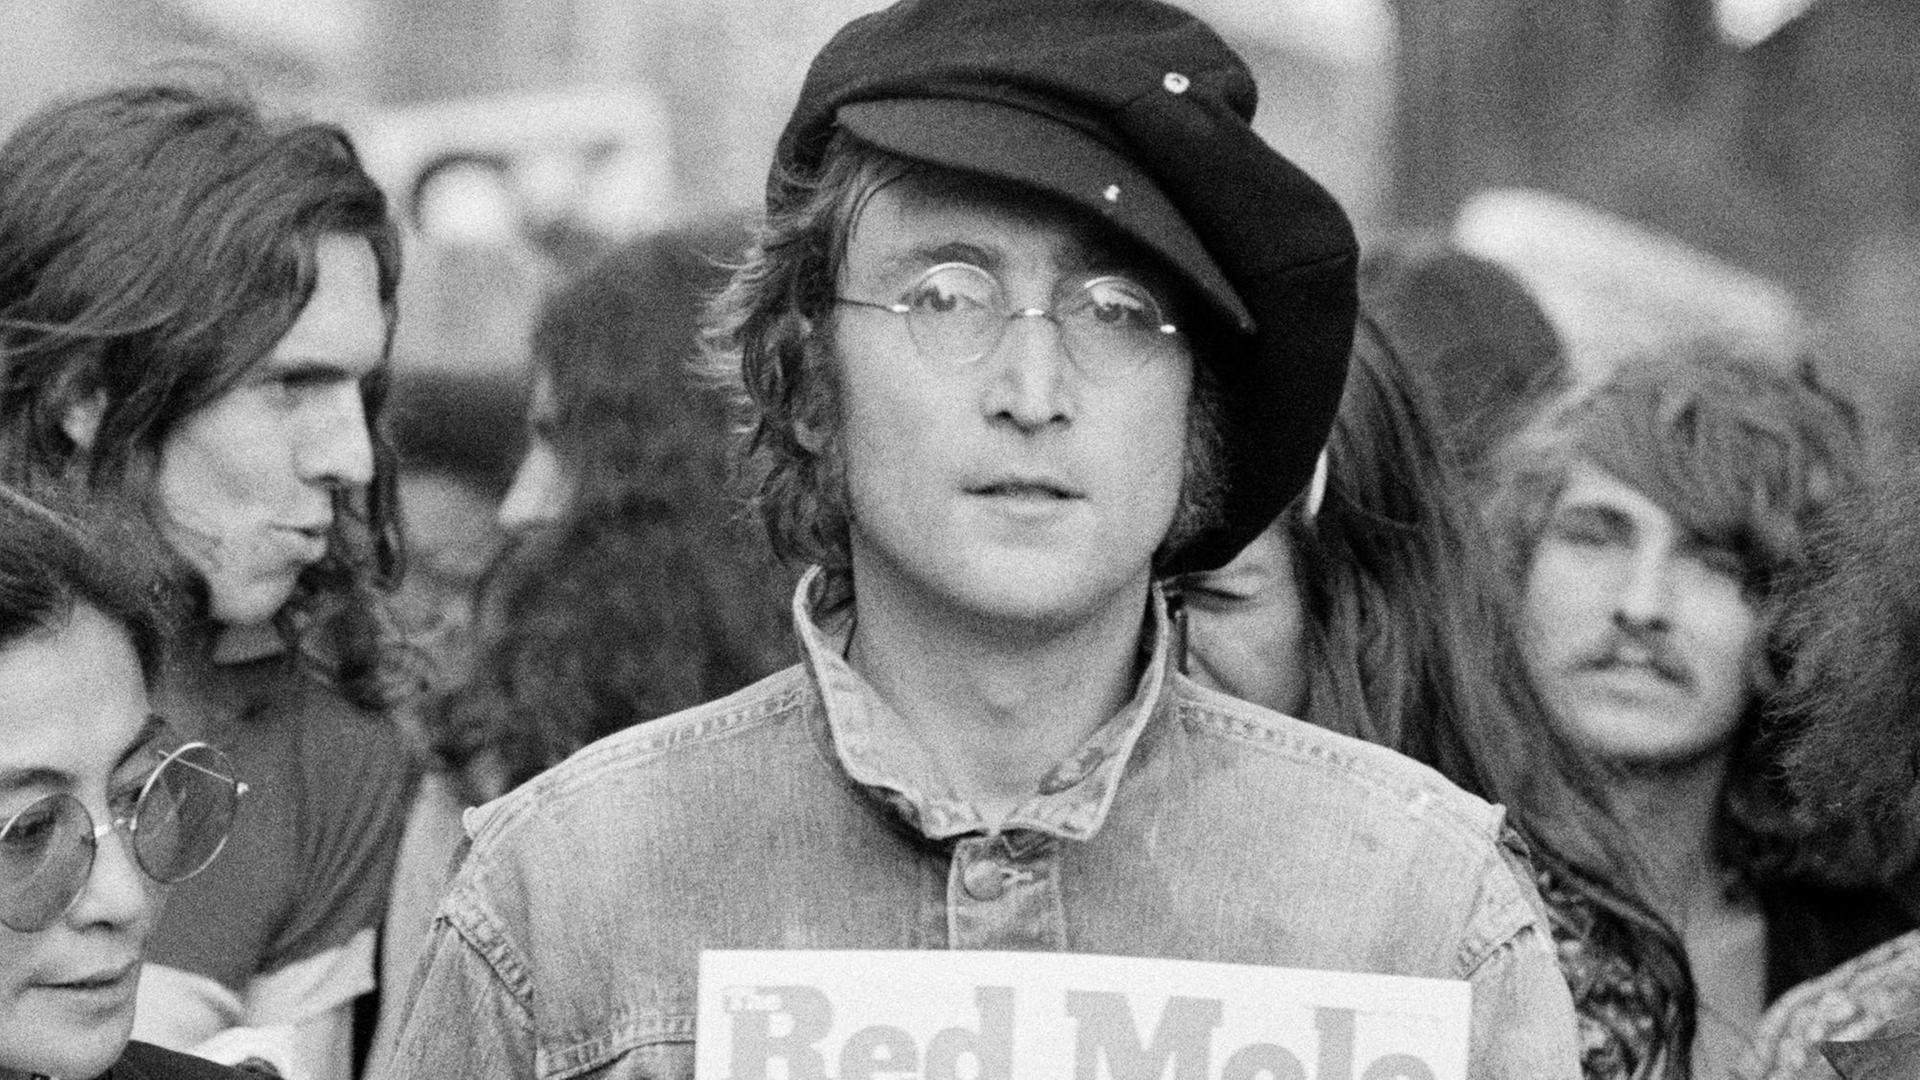 Schwarzweiß Fotografie von John Lennon im Hyde Park. Neben ihm steht Yoko Ono, im Hintergrund stehen weitere junge Menschen.